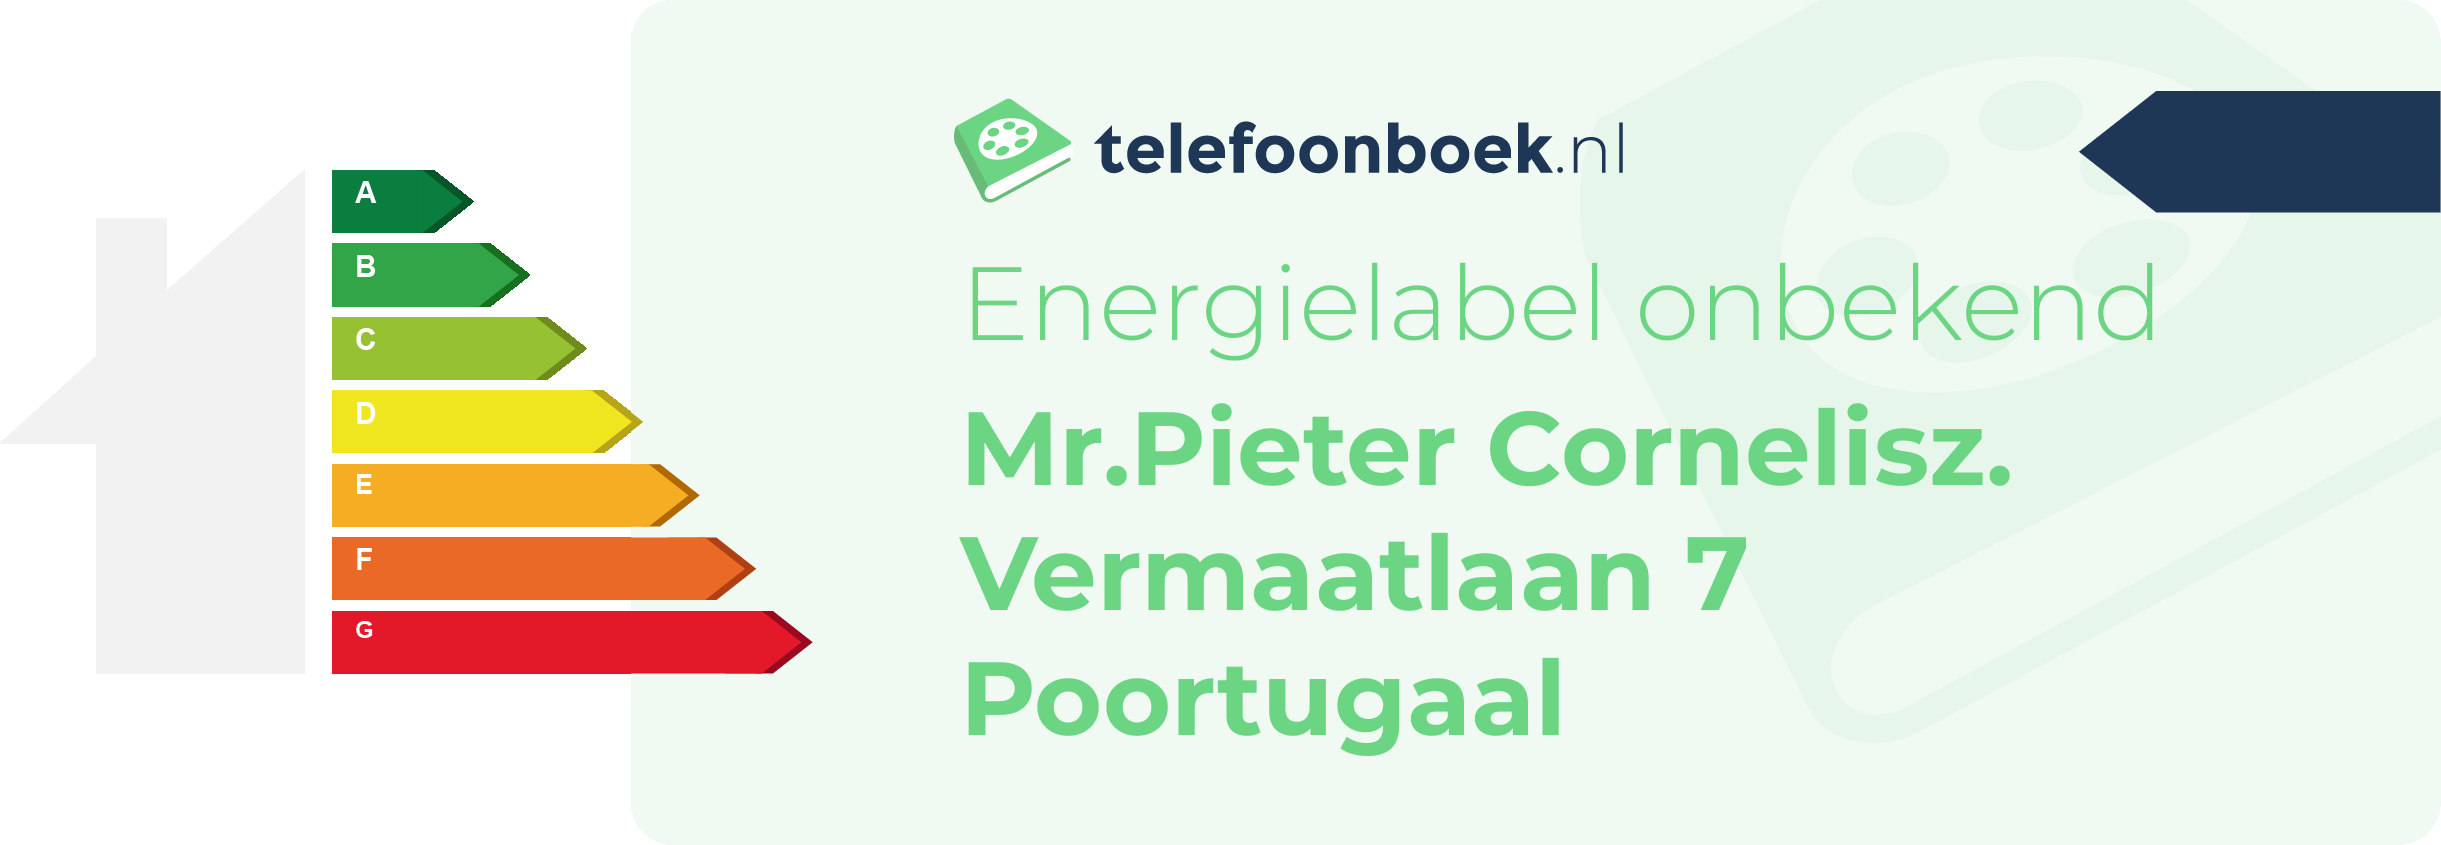 Energielabel Mr.Pieter Cornelisz. Vermaatlaan 7 Poortugaal